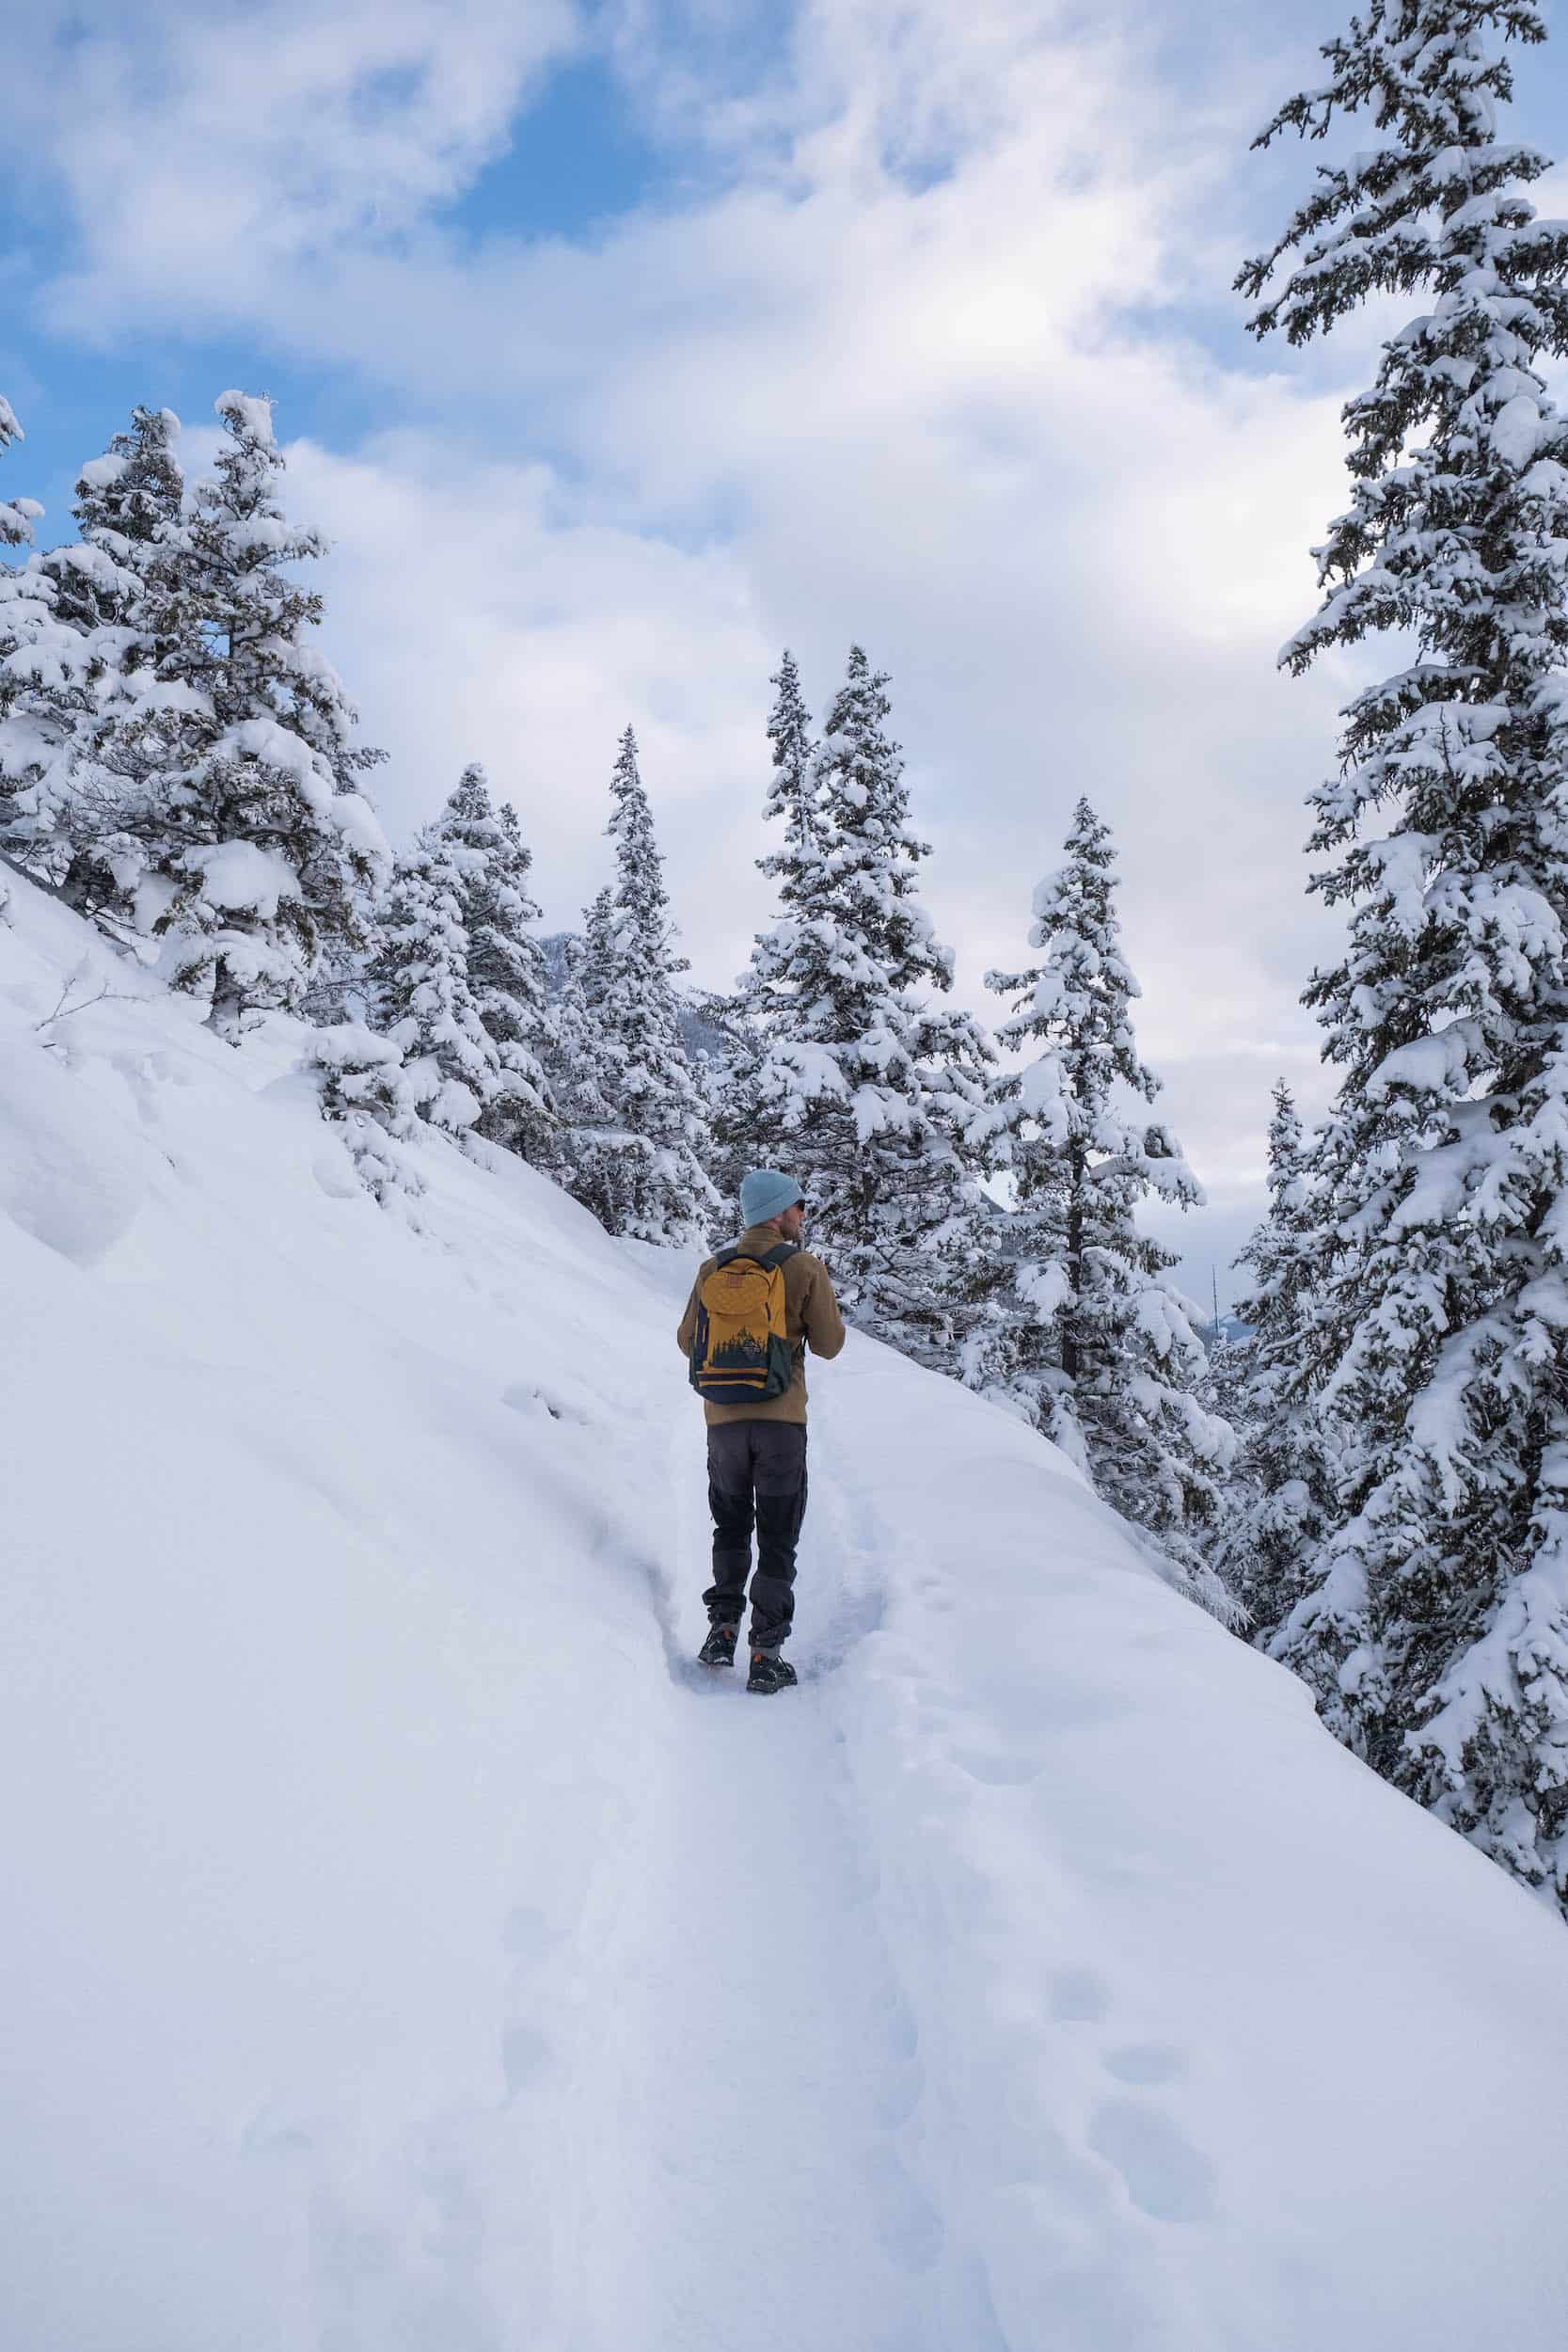 Banff in February